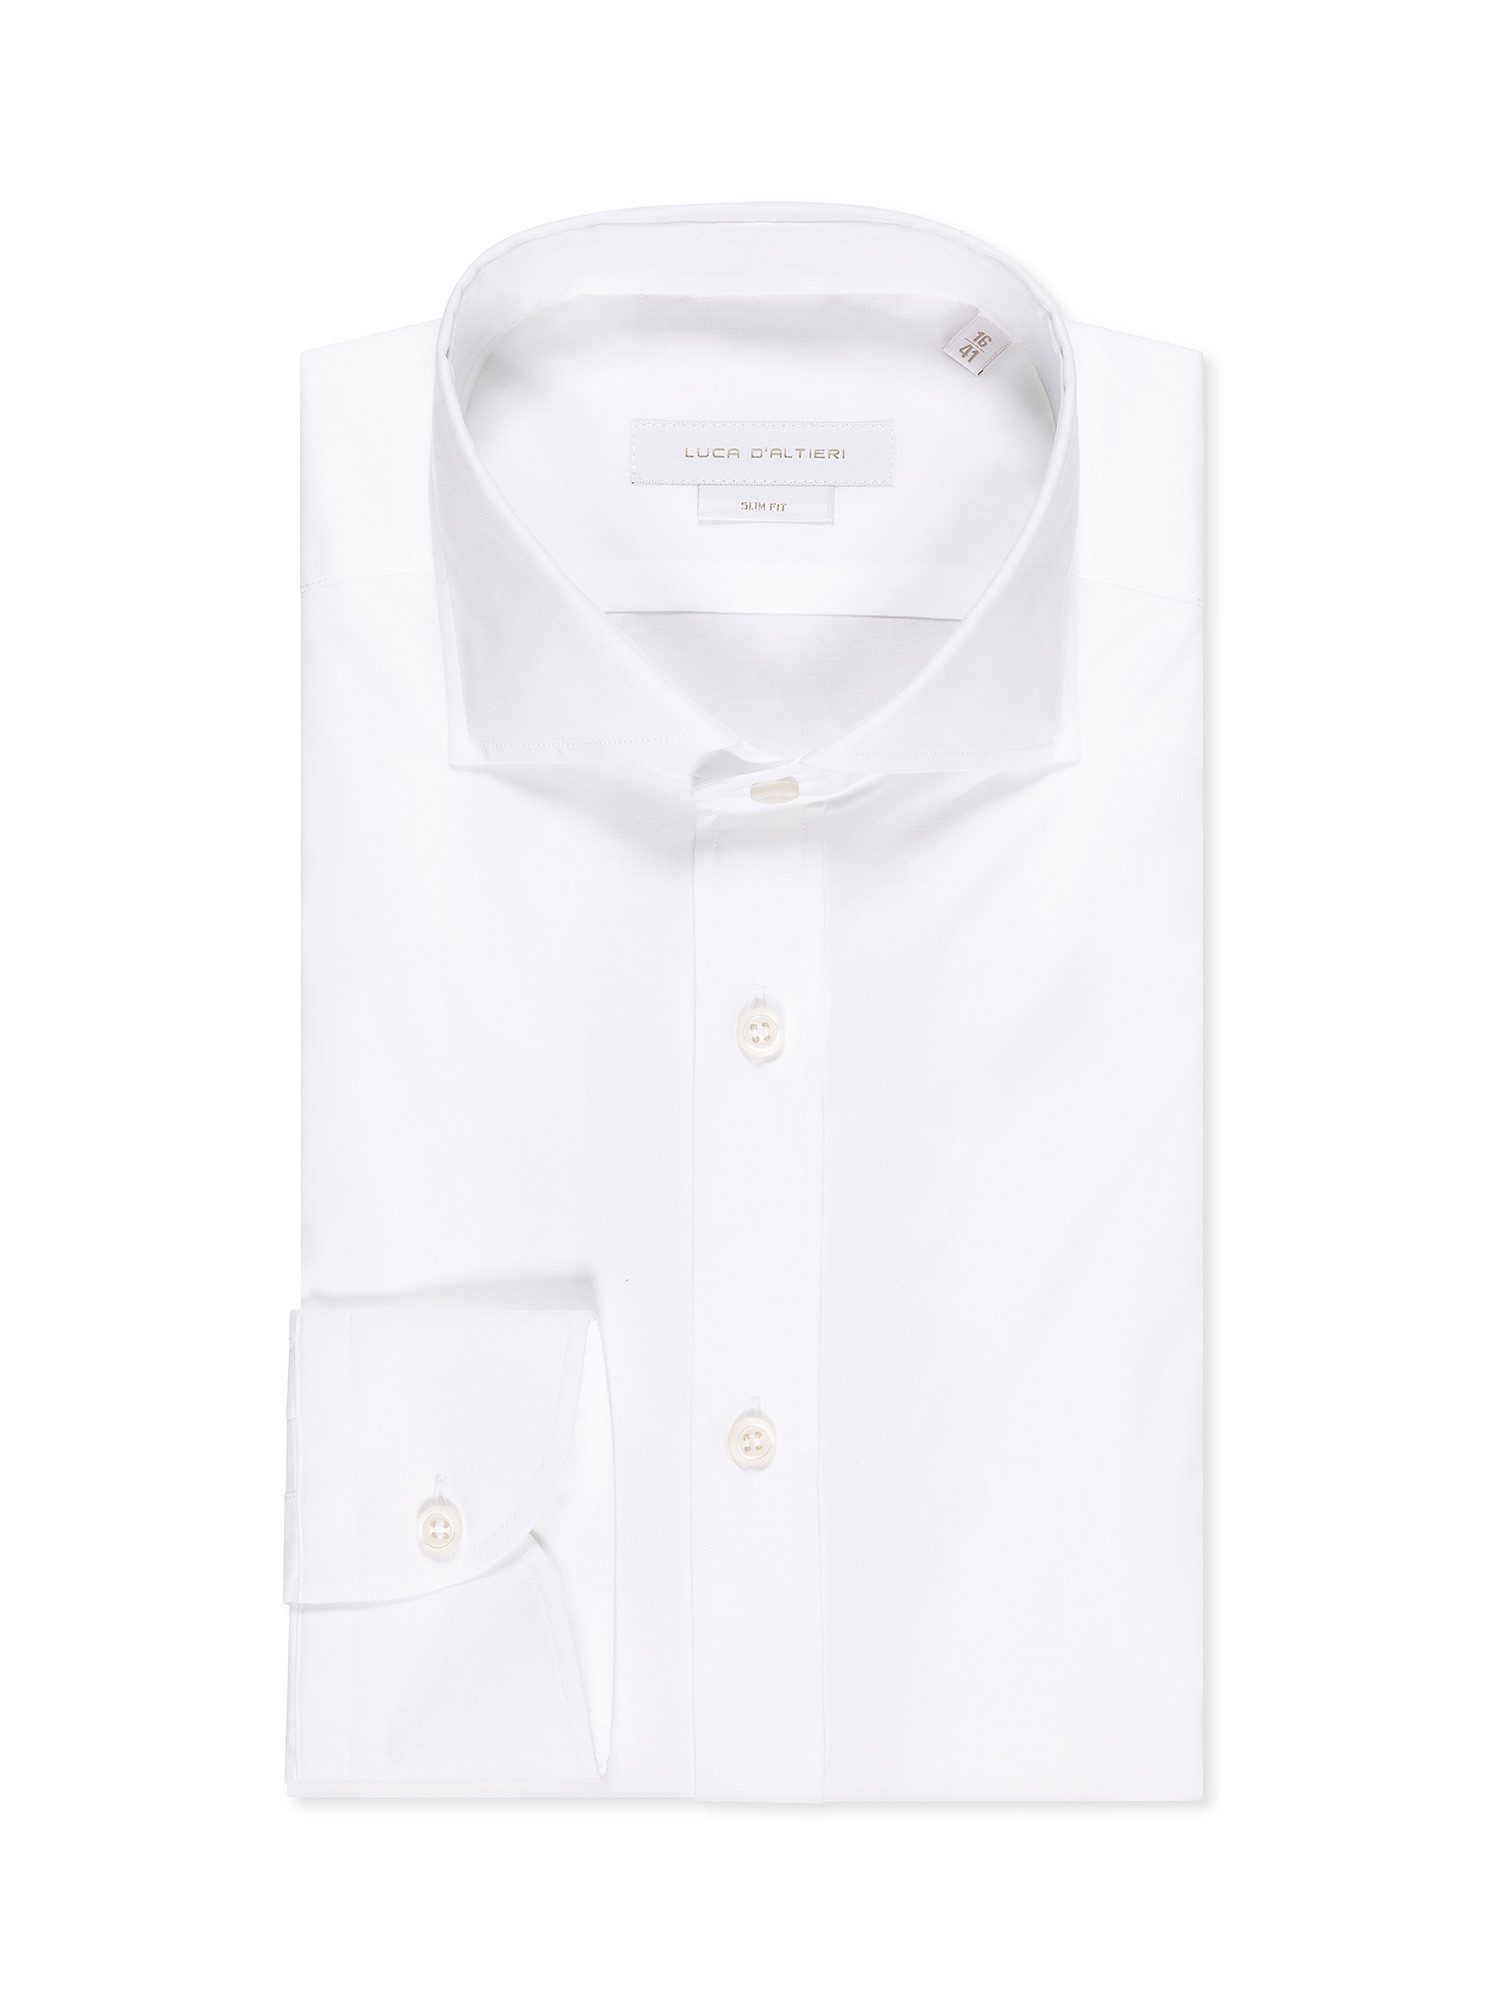 Camicia slim fit in cotone elasticizzato, Bianco, large image number 0